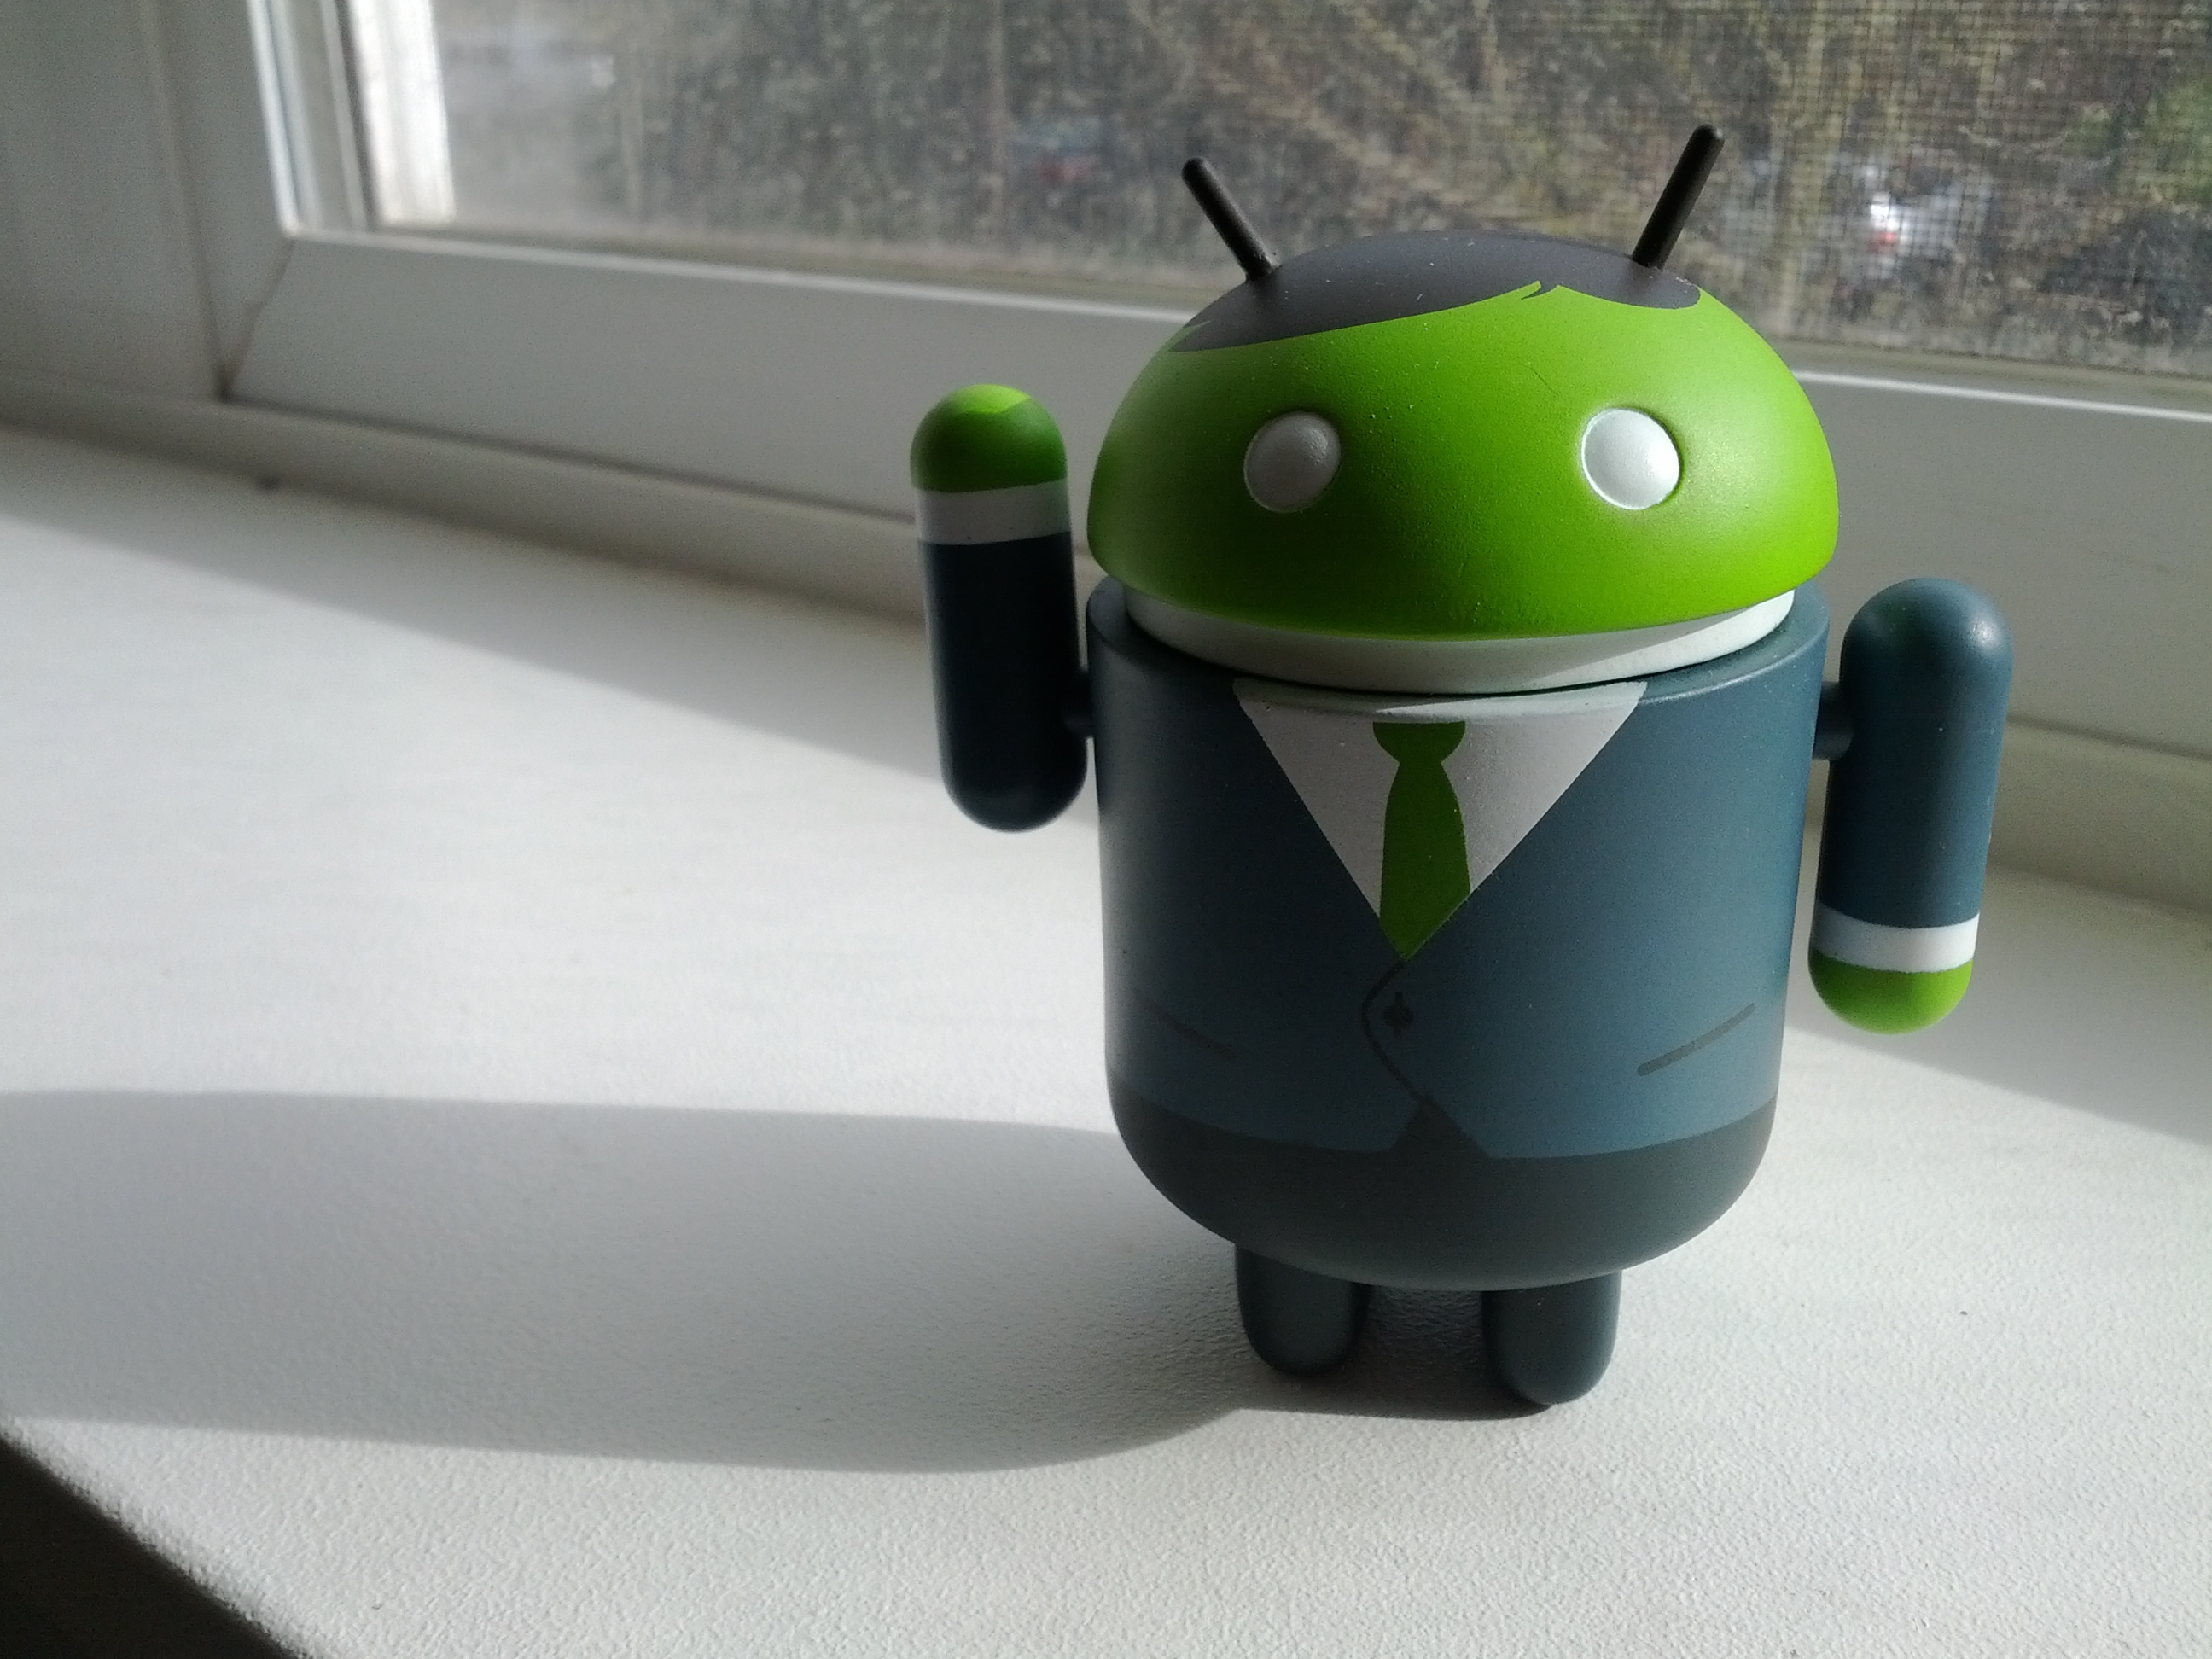 Toy android. Андроид игрушка. Игрушка андроид зеленый робот. Андроид игрушка купить. Связанная плюшевая игрушка зеленого робота андроида.